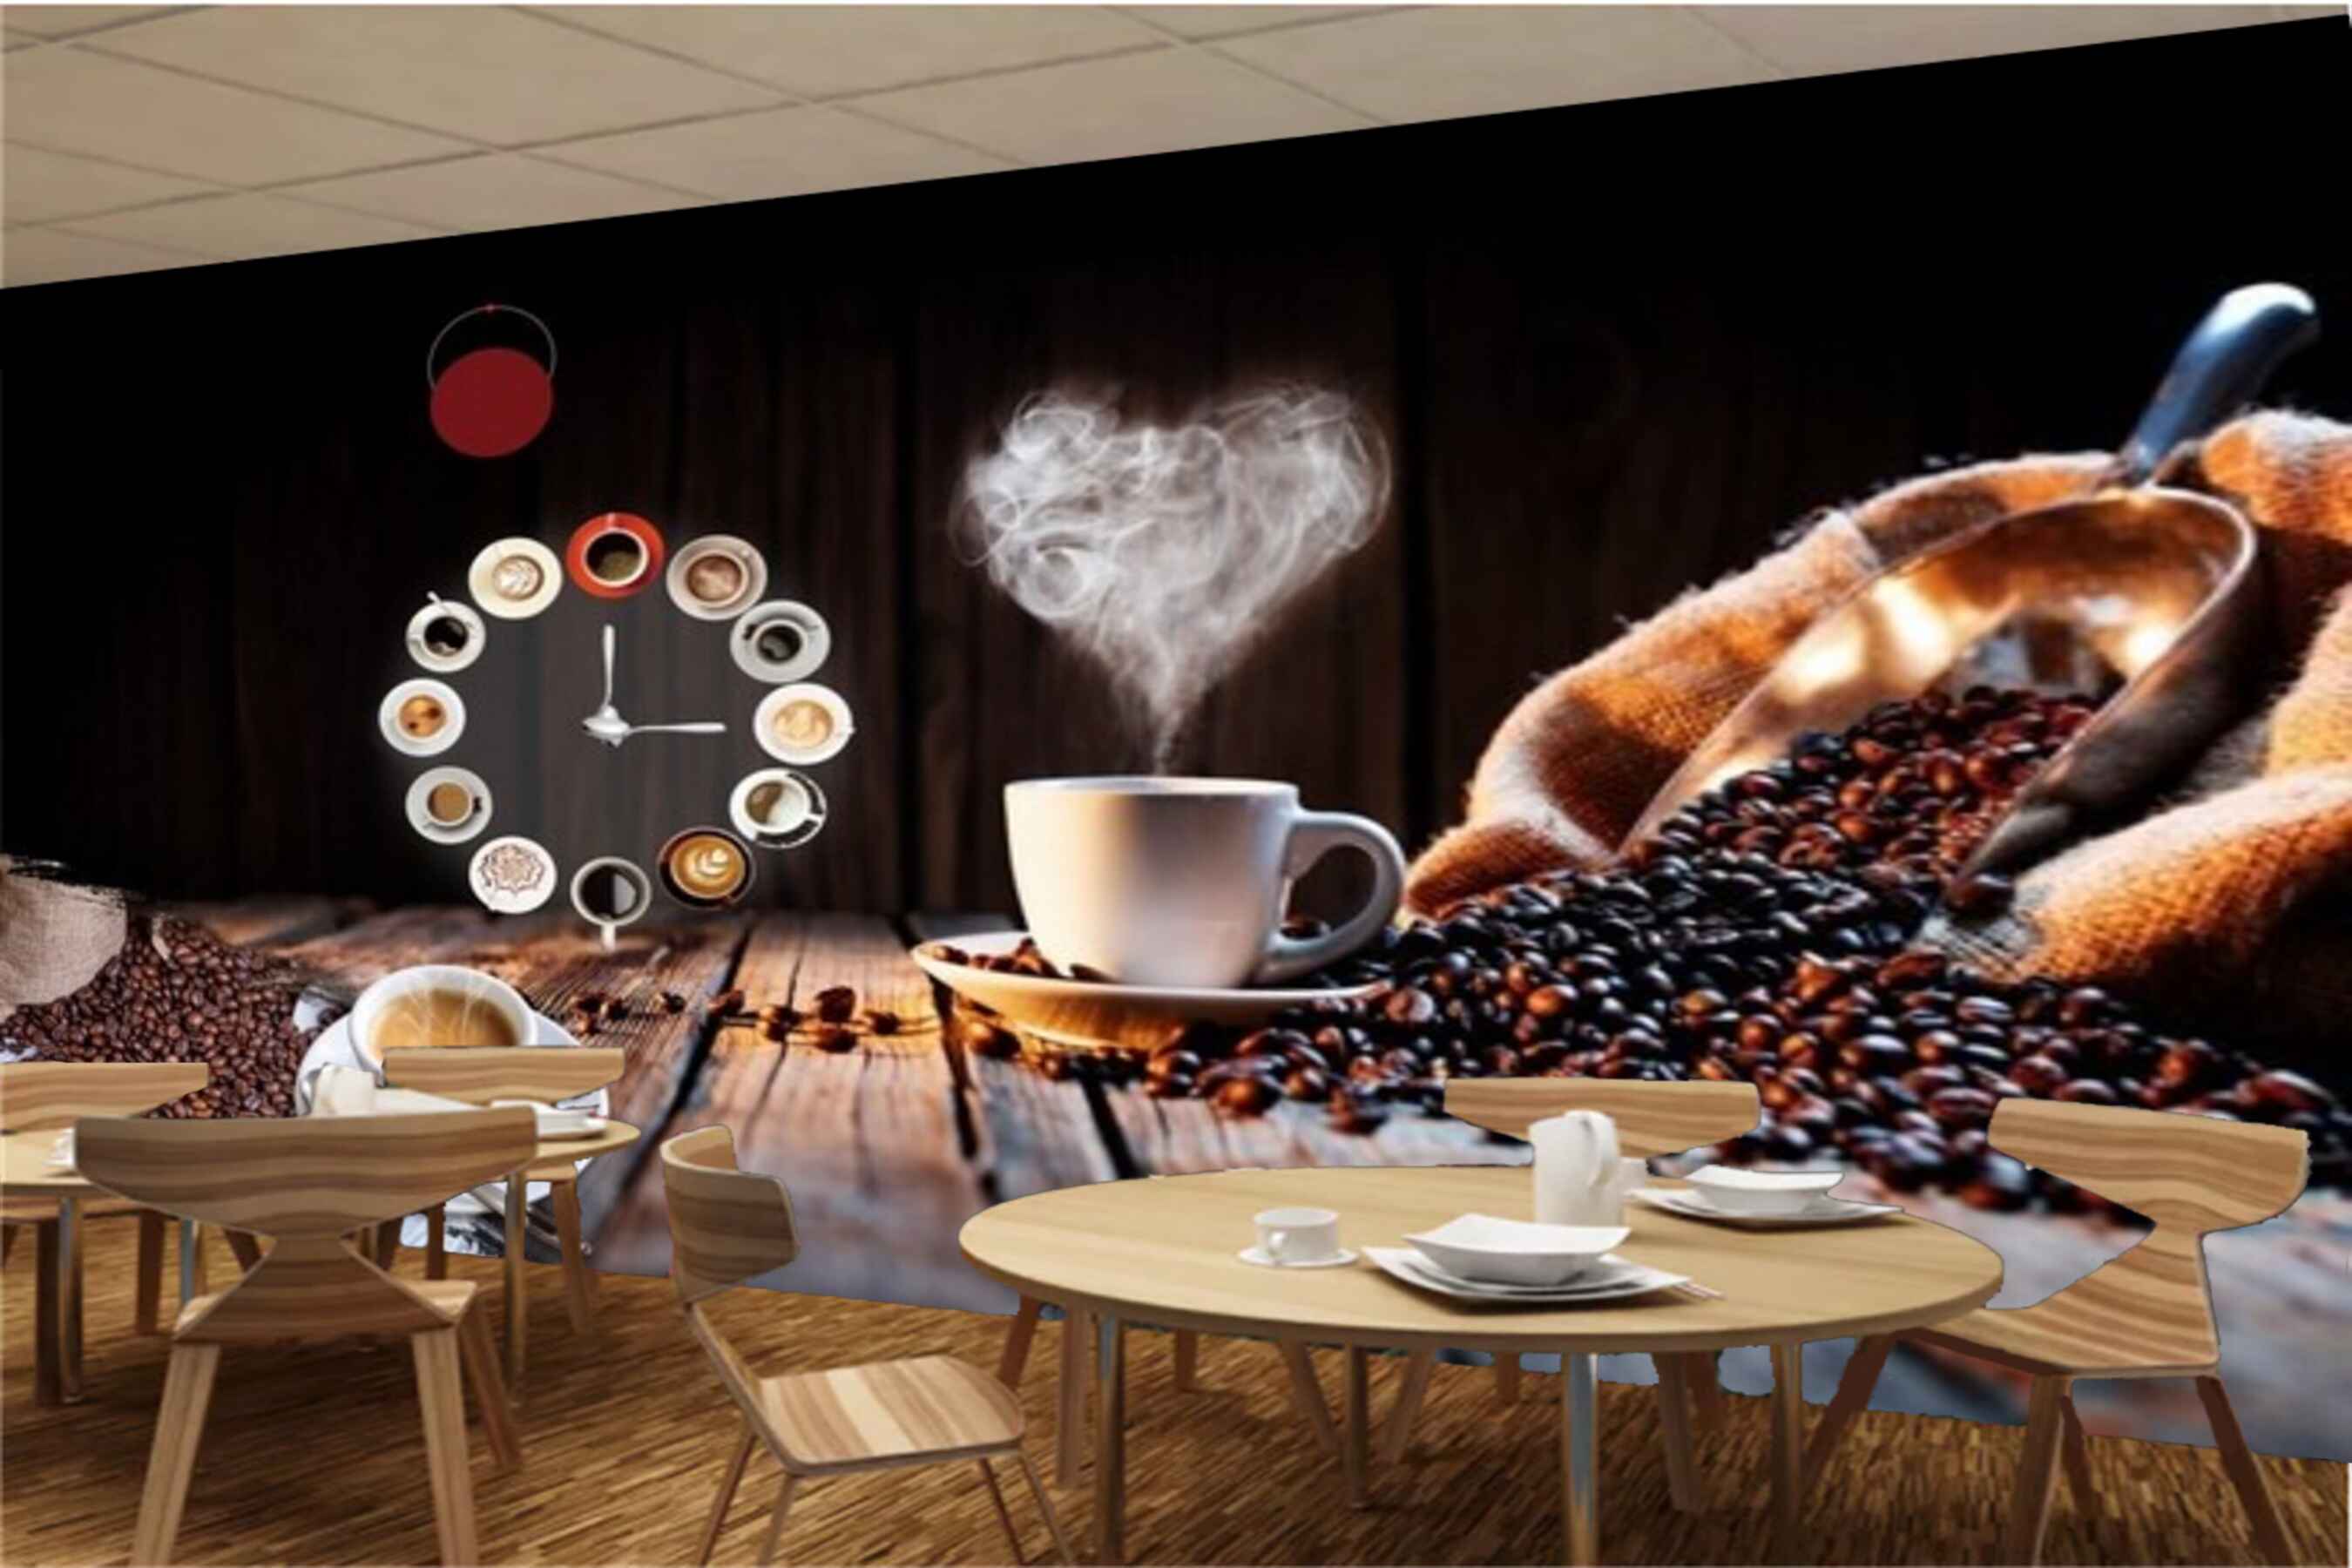 Avikalp MWZ3010 Clock Coffee Beans Cups Saucer HD Wallpaper for Cafe Restaurant